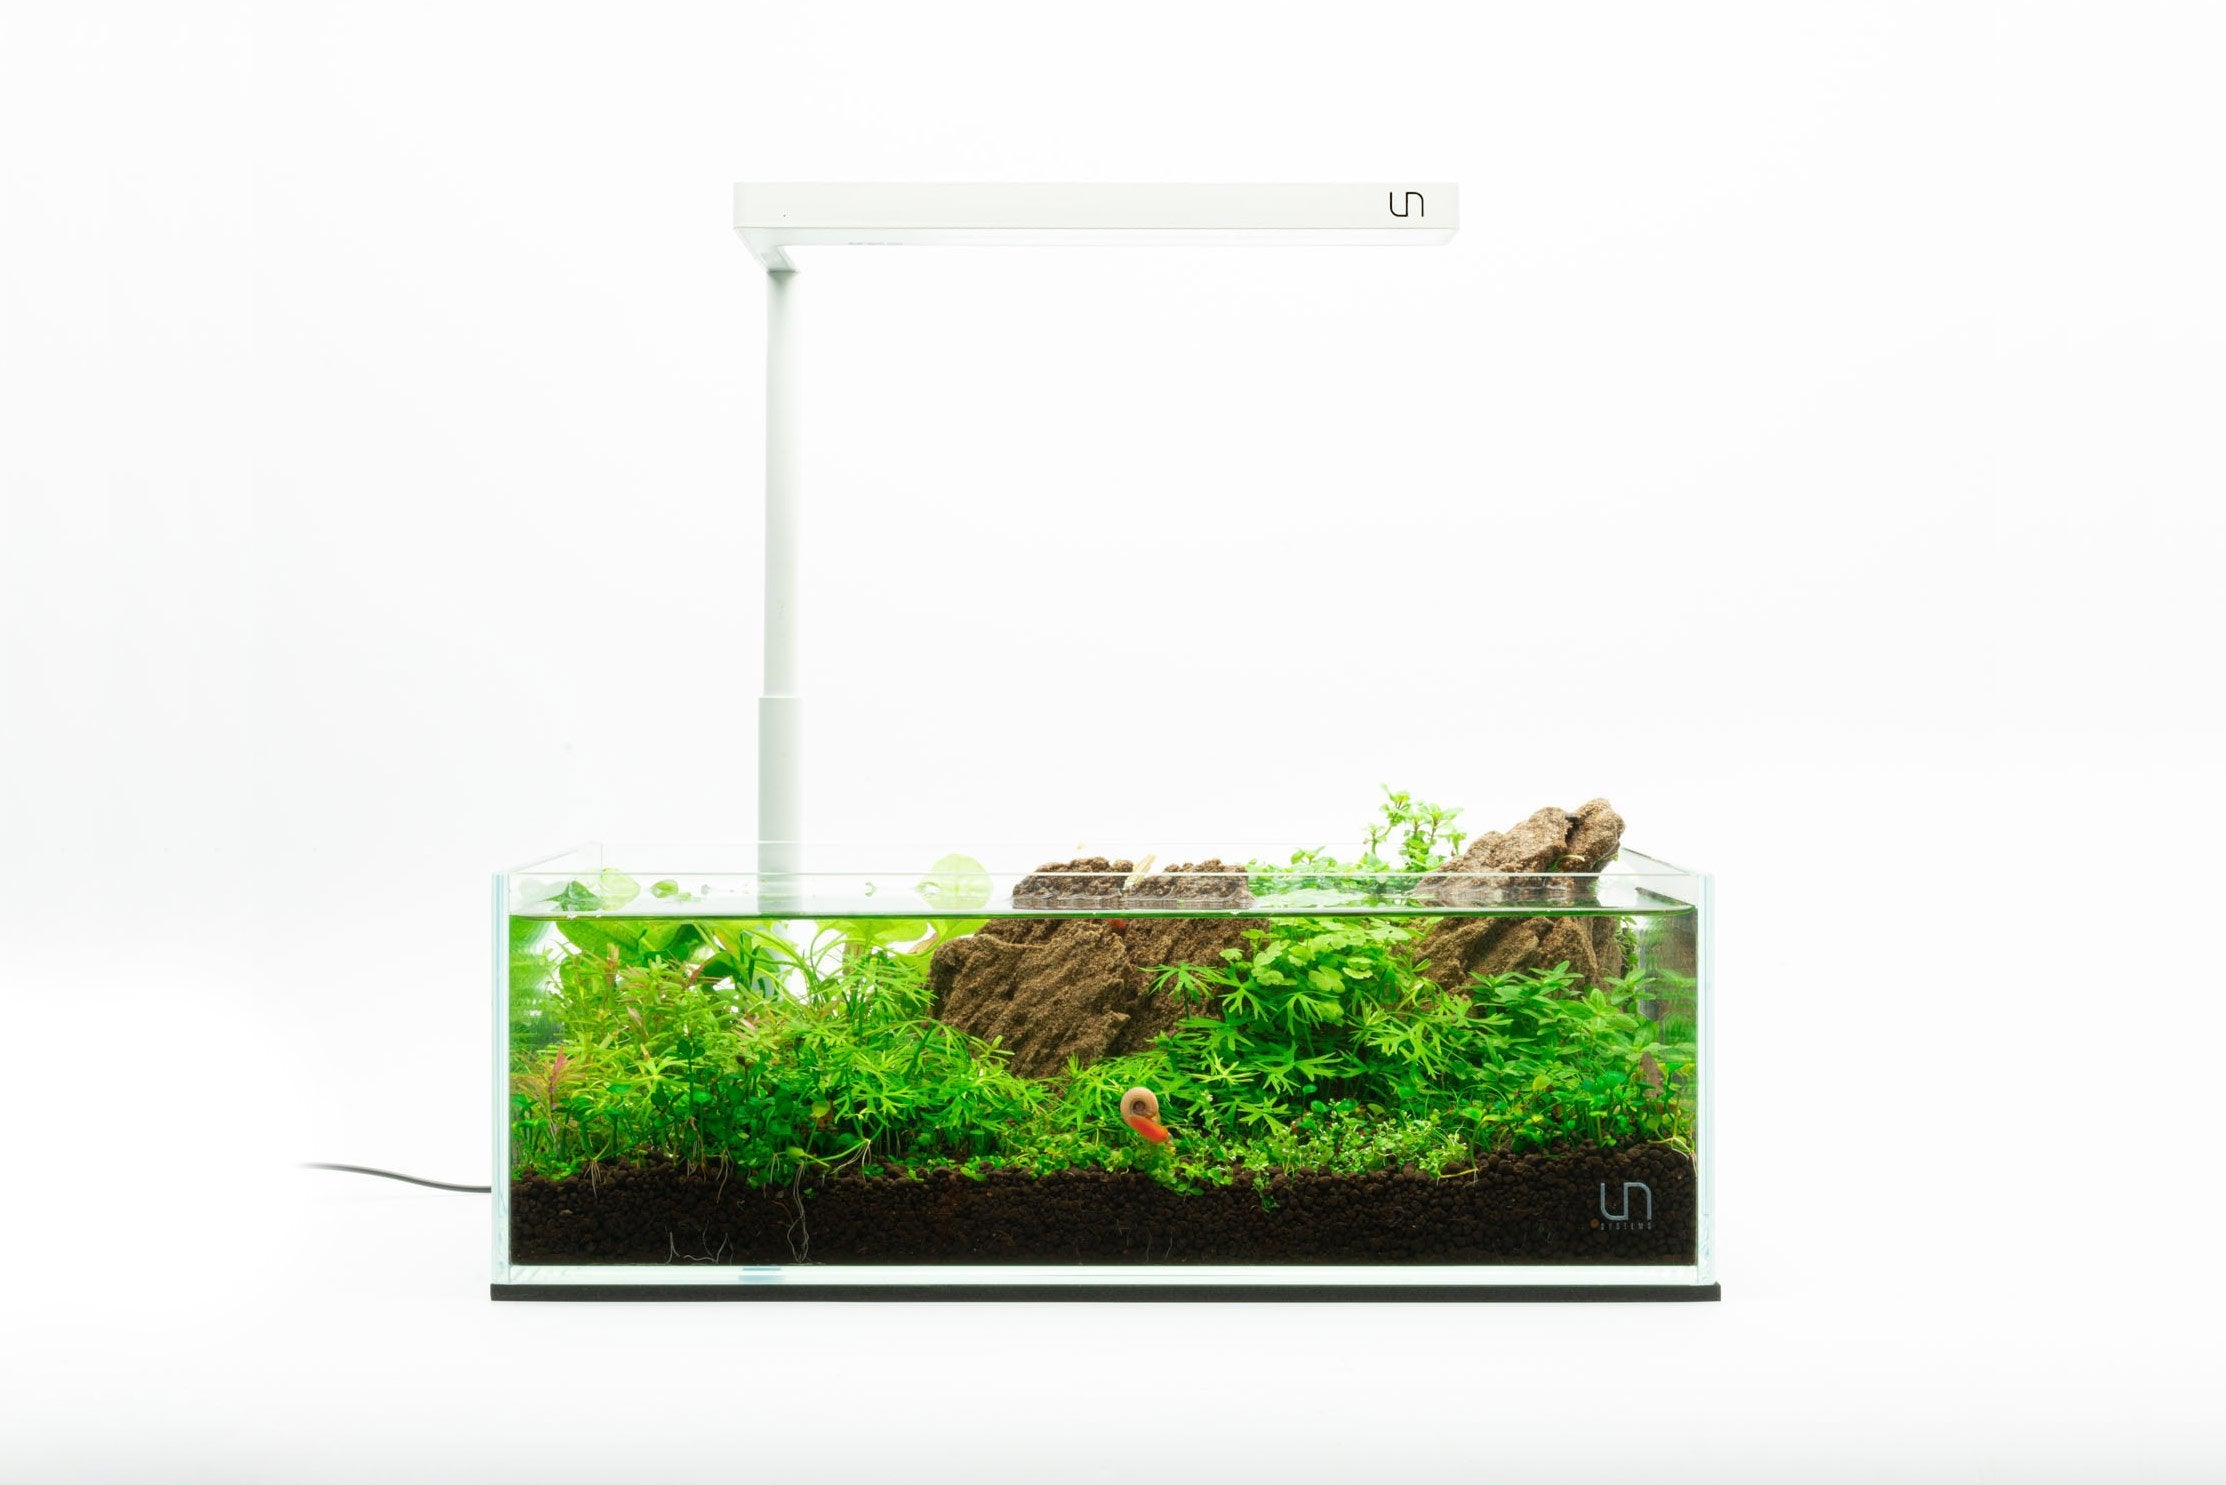 rimless aquarium kit